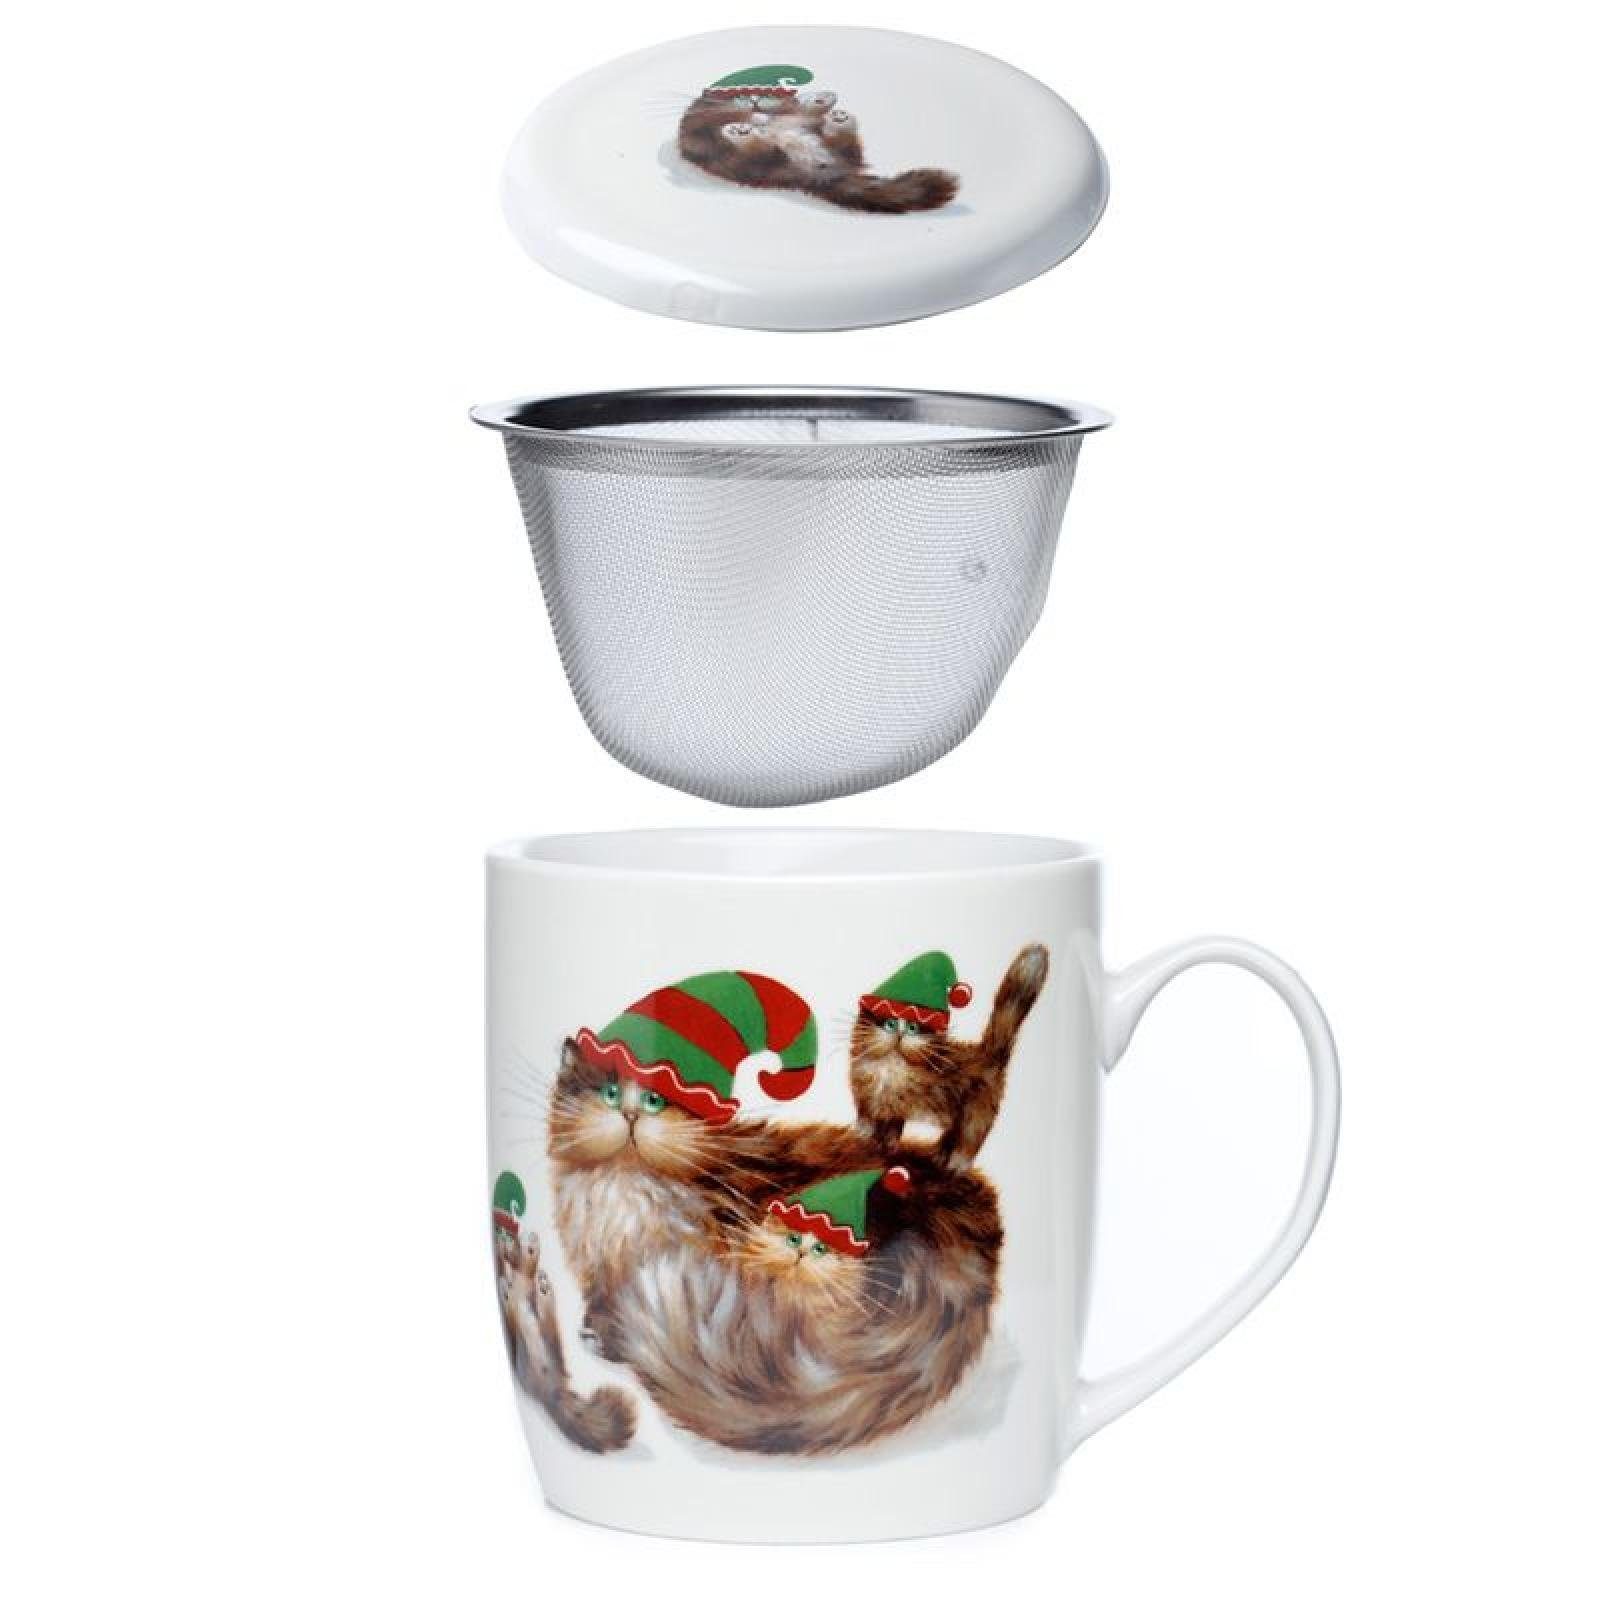 Puckator Tasse Kim Haskins Weihnachten Elfenkatzen Tasse aus Porzellan mit Teeei und Deckel